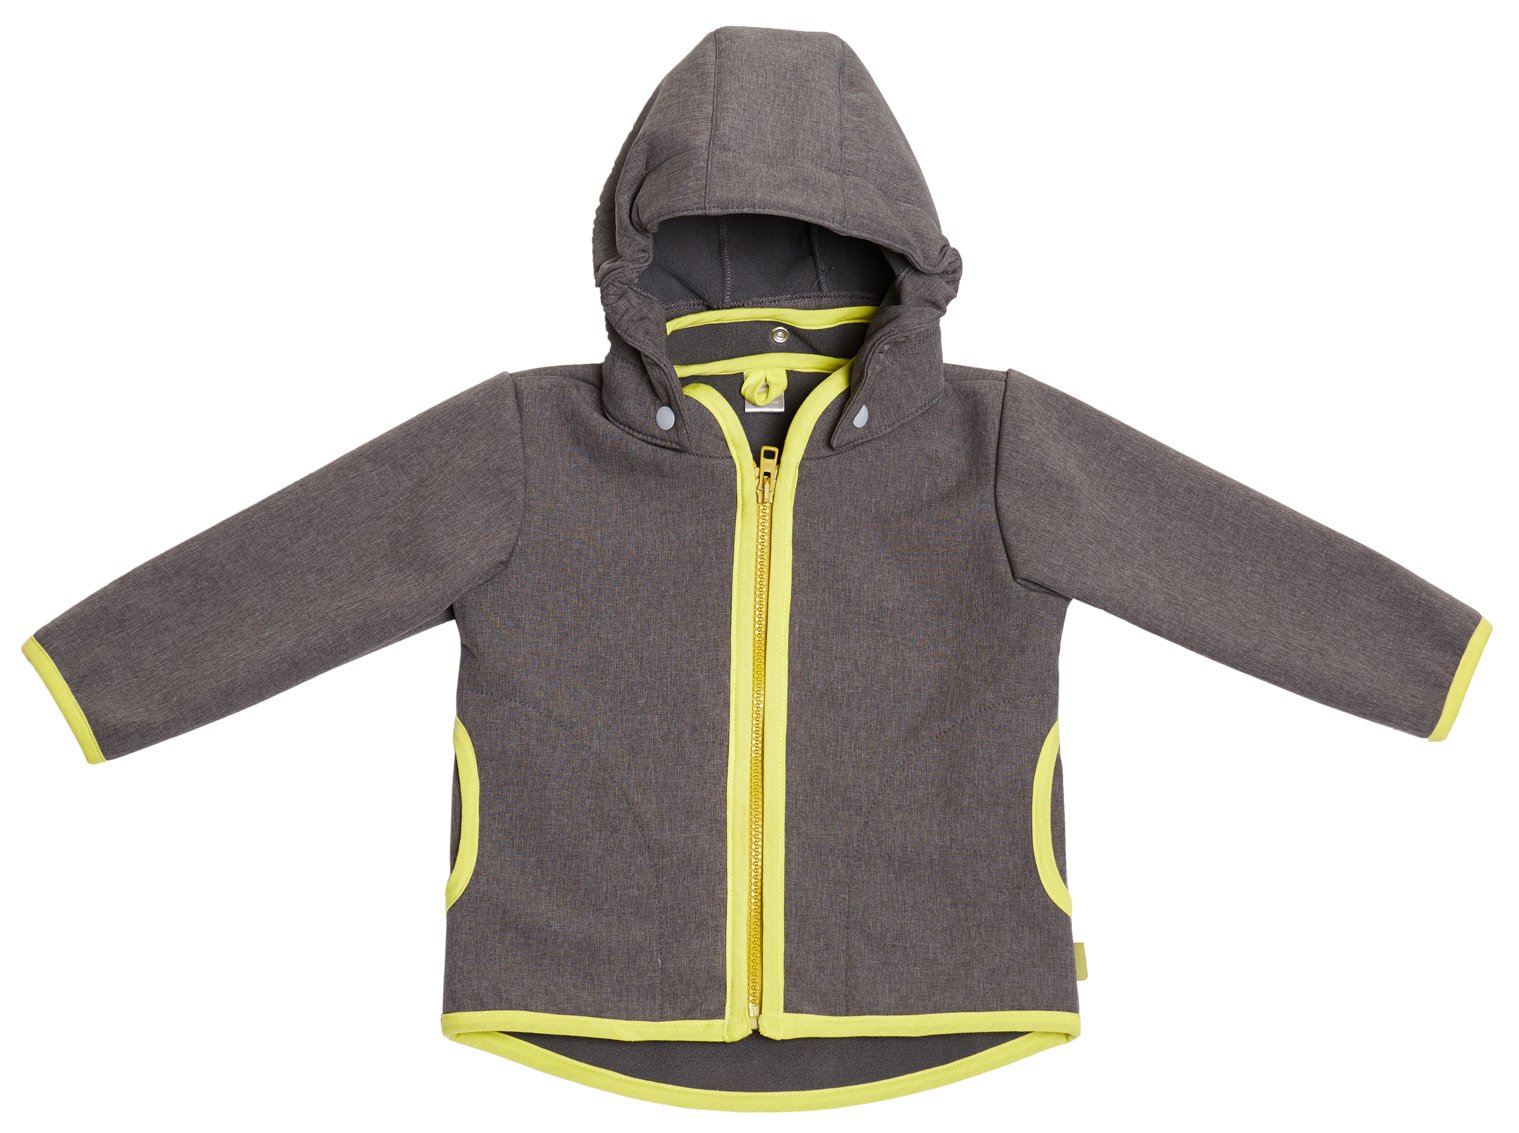 be! Baby/Kinder Softshell Jacke mit Leichter Fleece-Schicht innen, Wassersäule: 10.000 mm, Gr. 86/92, grau-Melange